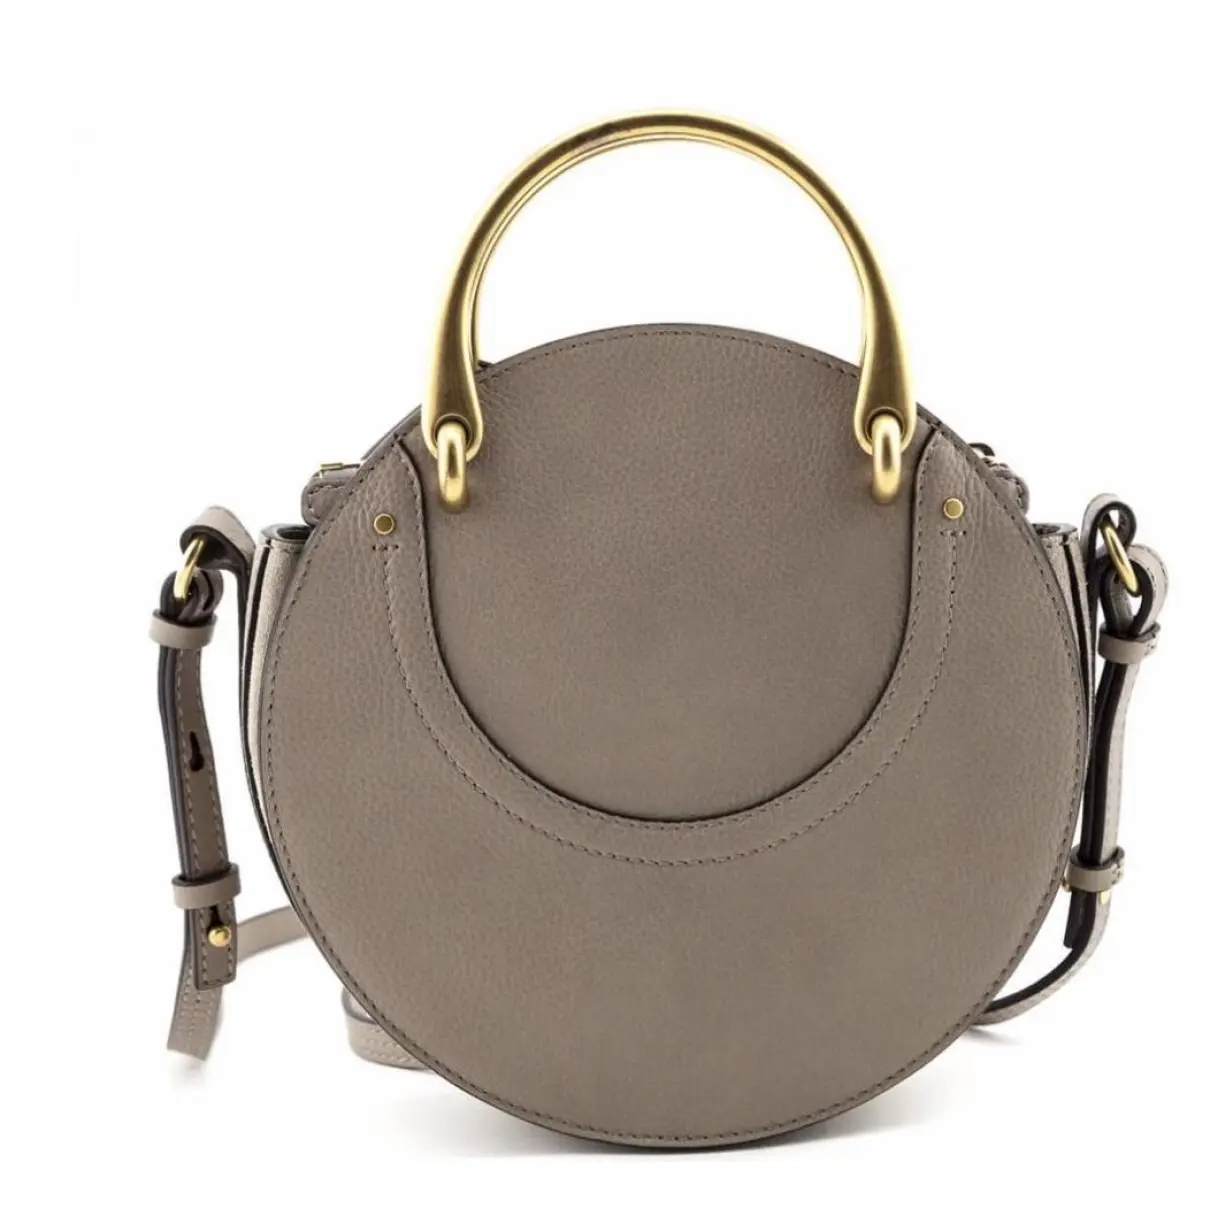 Chloé Pixie leather handbag for sale